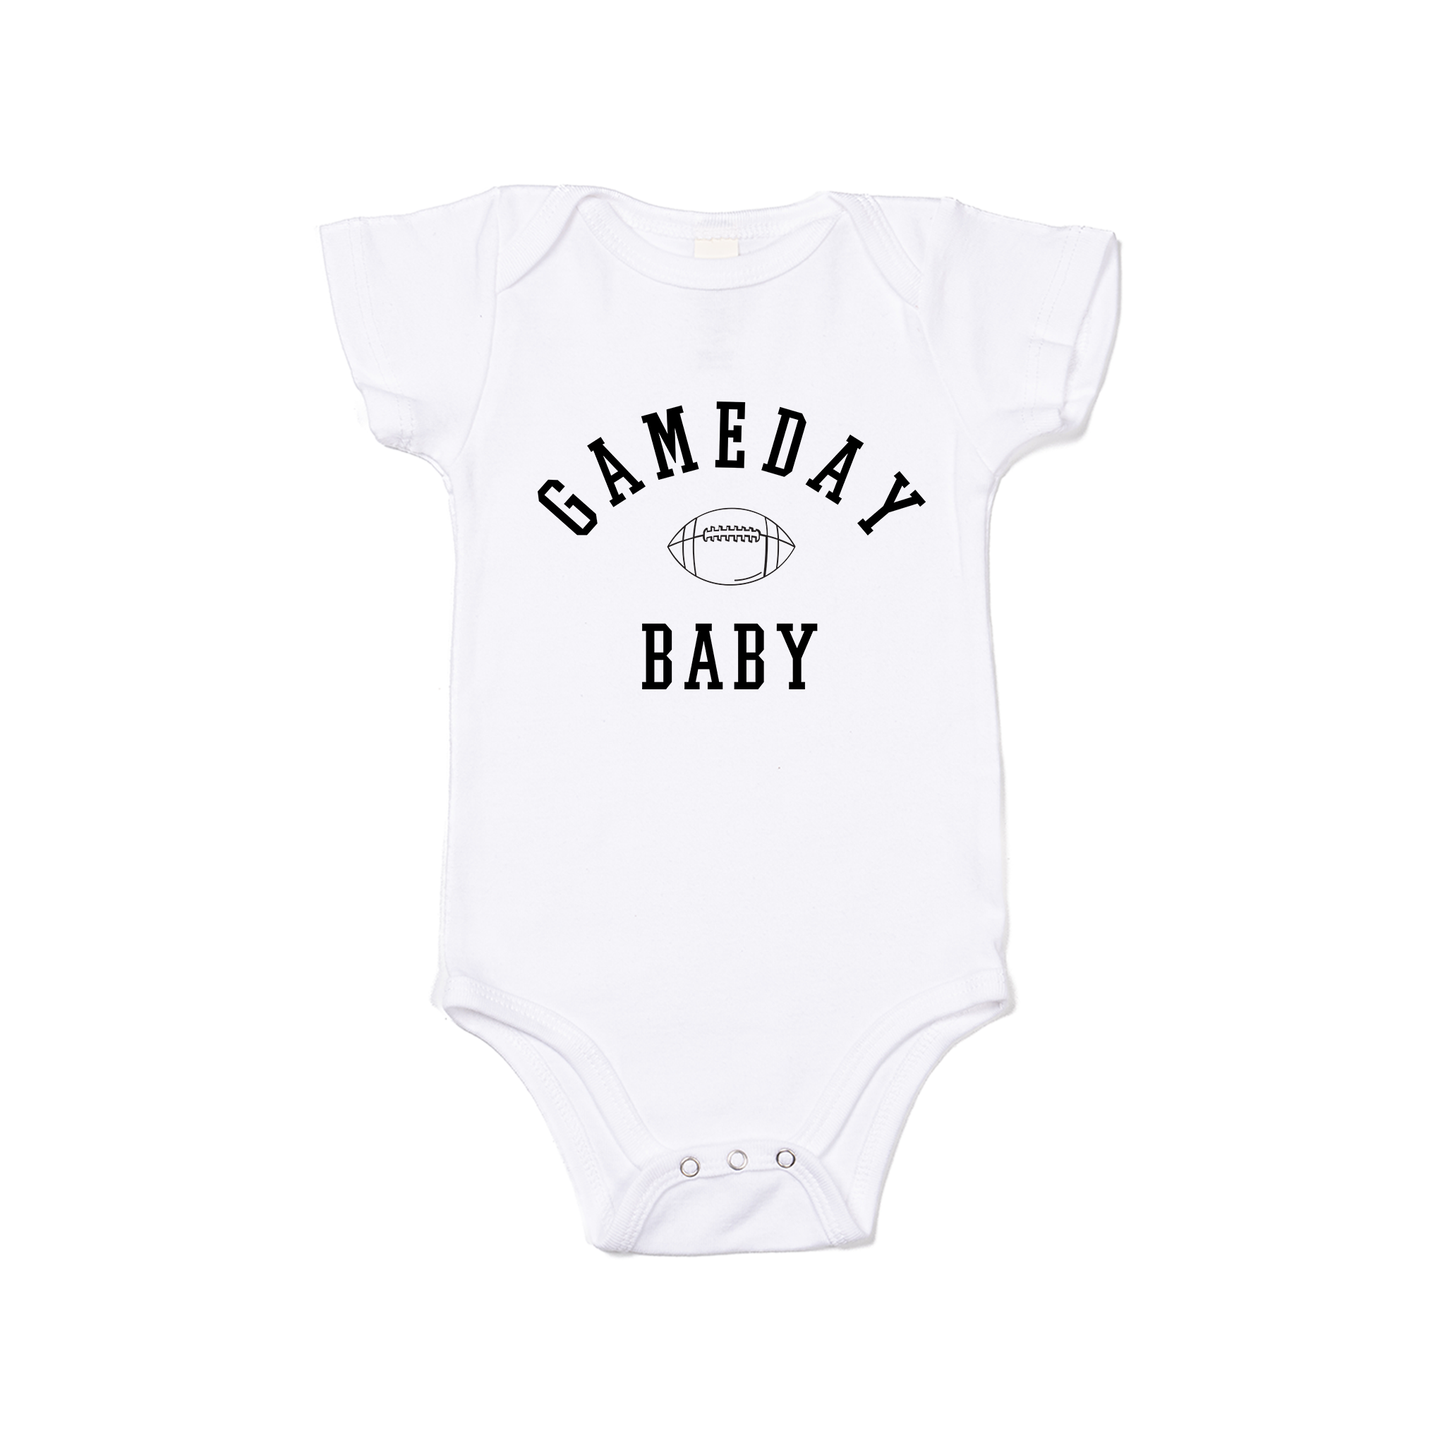 Gameday Baby (Black) - Bodysuit (White, Short Sleeve)